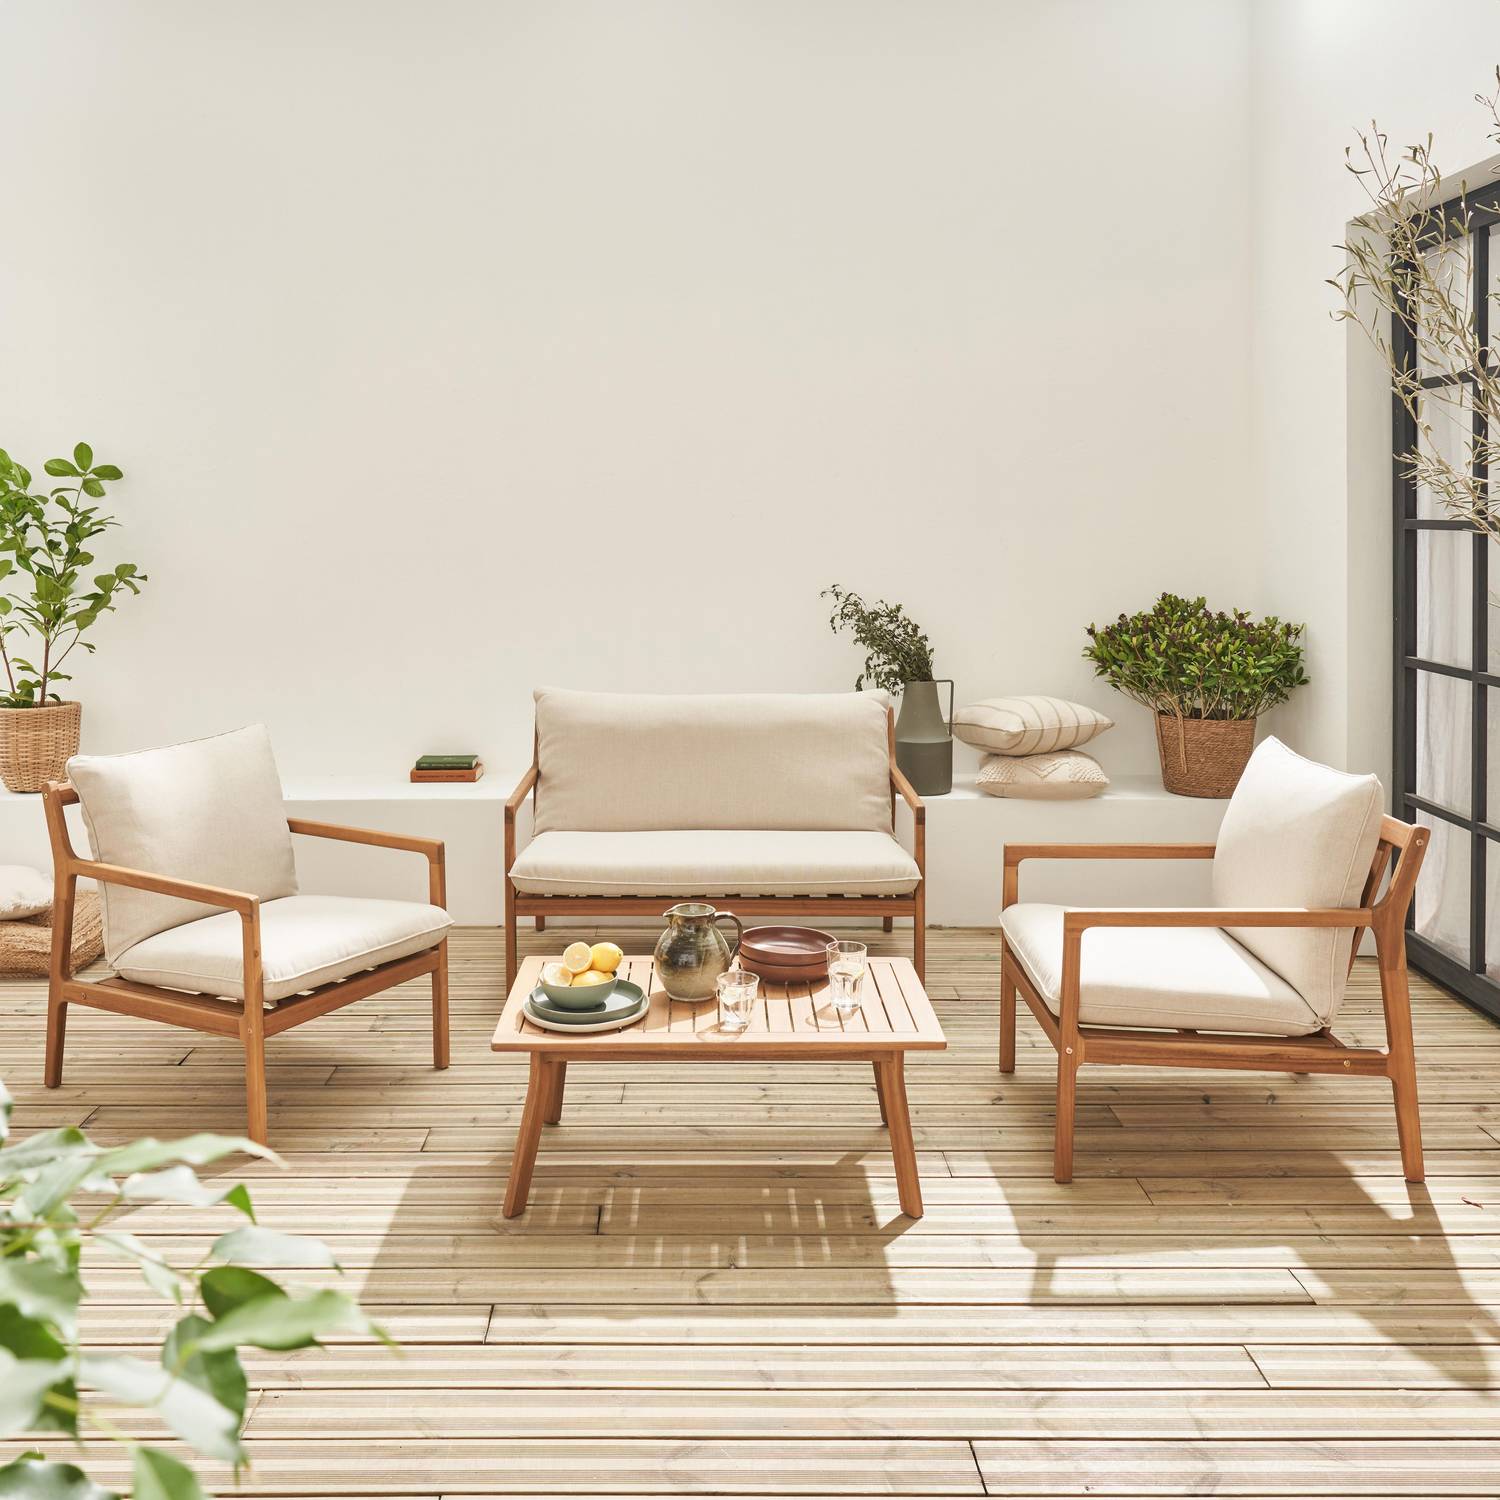 Gartenmöbelset aus FSC-Akazienholz, 1 Tisch, 1 Bank, 2 Sessel, beige, abziehbare Kissenbezüge - Nalda Photo1